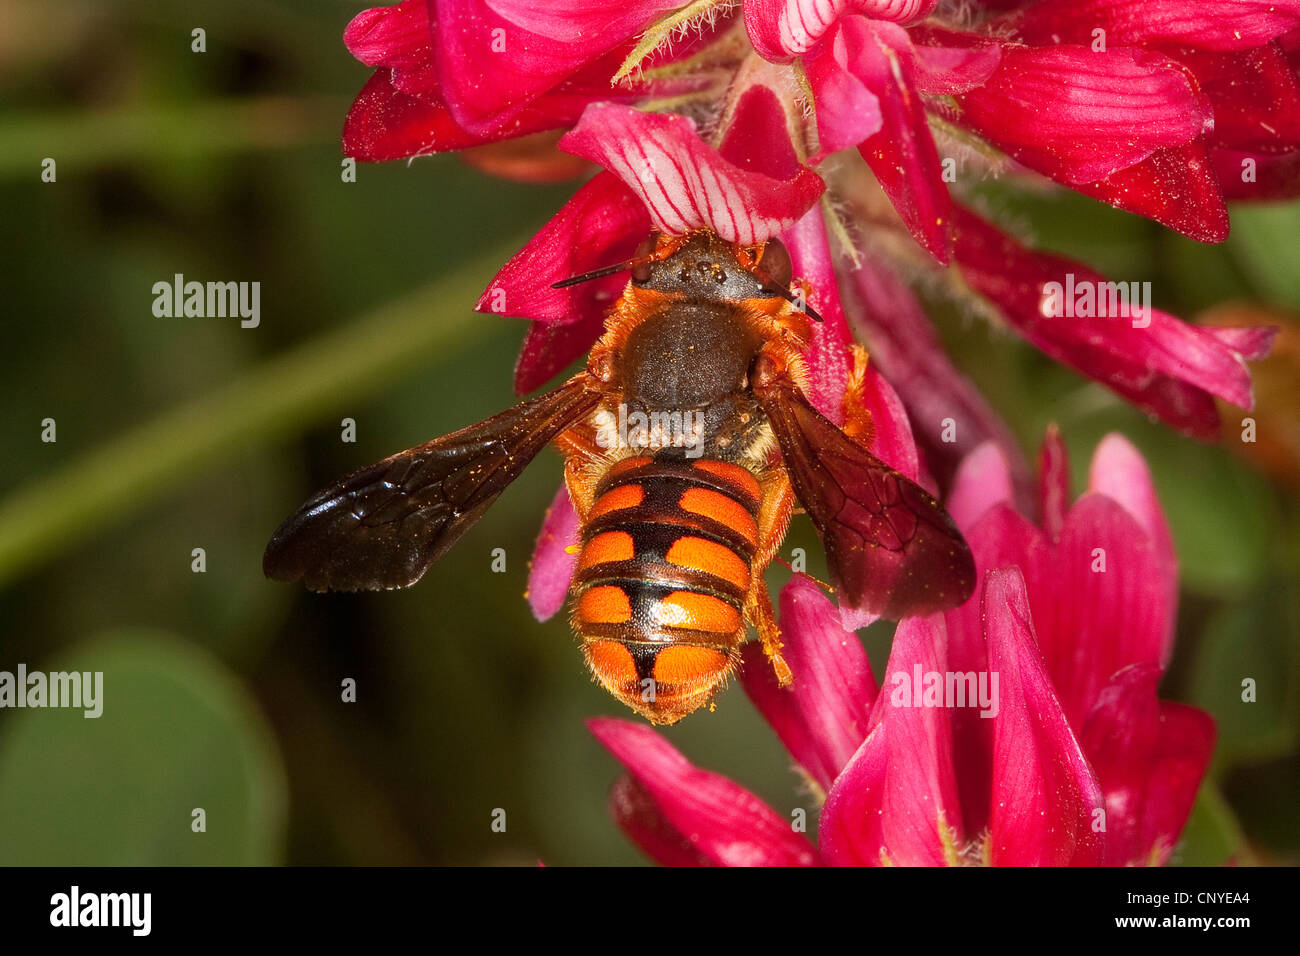 Piccolo anthid bee, carda lana (Rhodanthidium siculum, Anthidium siculum), la ricerca di nettare su un composito bianco, Italia, Sicilia Foto Stock